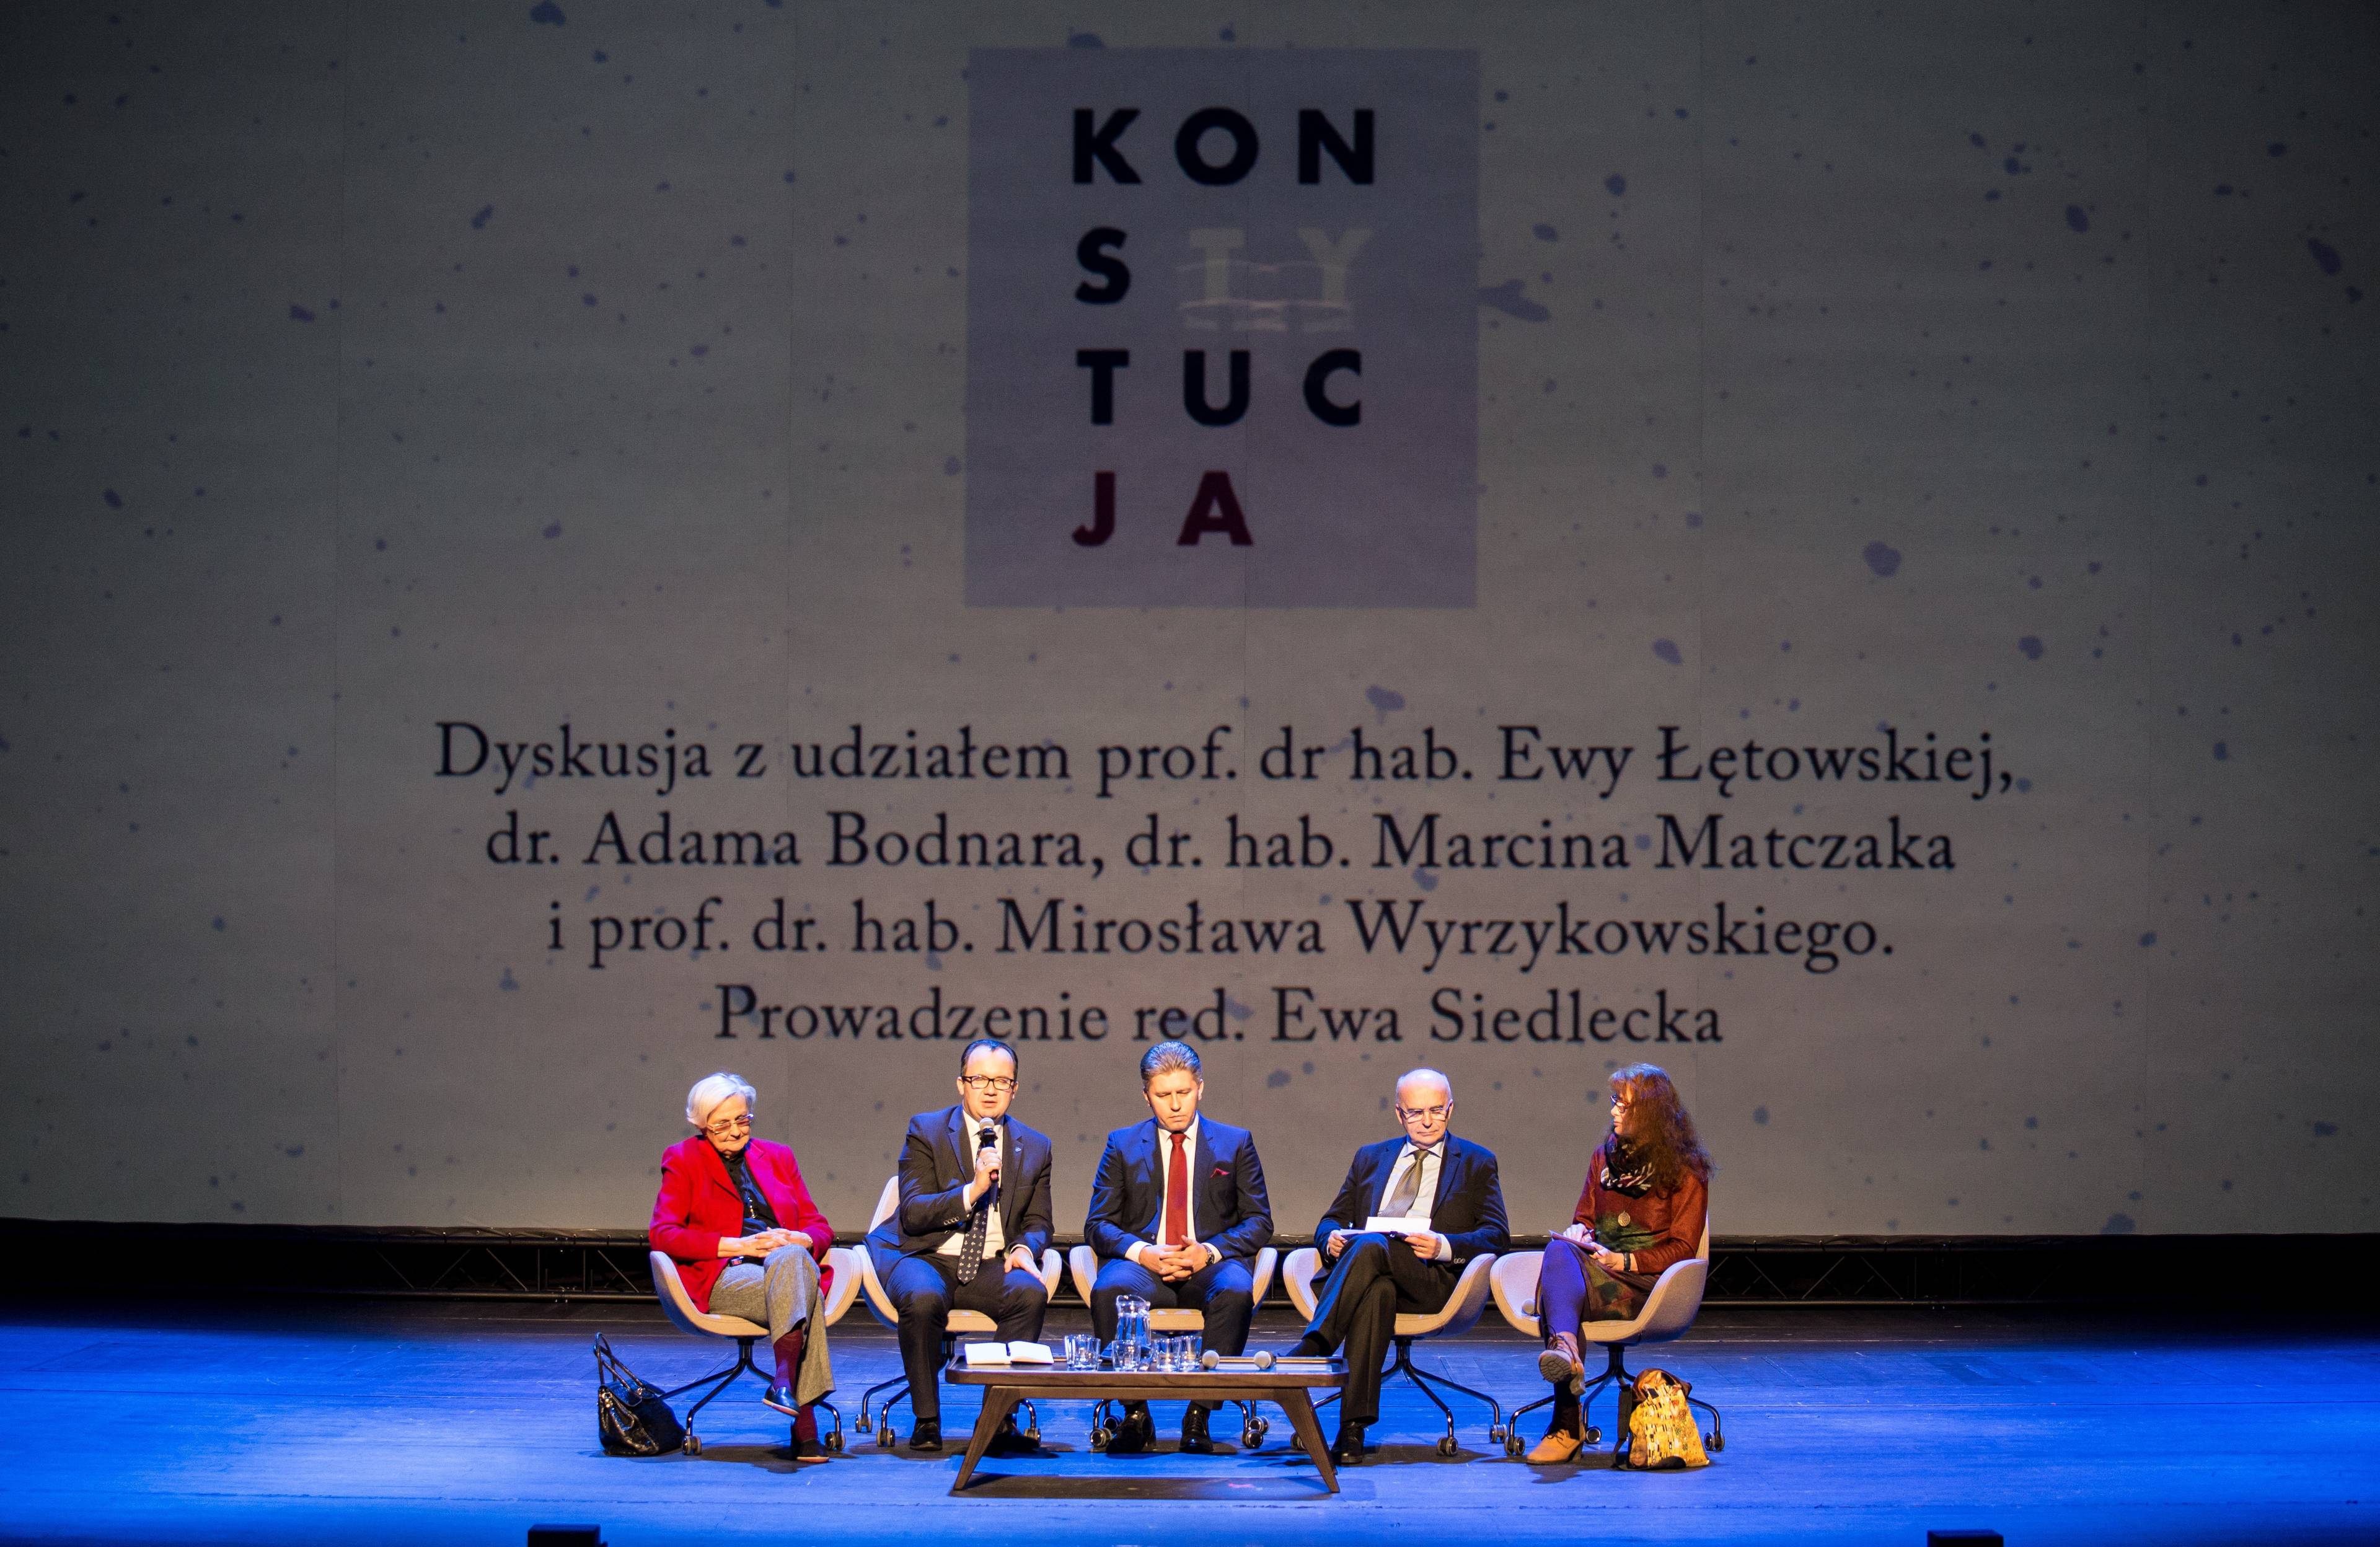 Pięć osób siedzi na scenie podczas dyskusji. W tle na ekranie projekcja przedstawiająca plakat „KonstytucJA” i lisą nazwisk dyskutantów